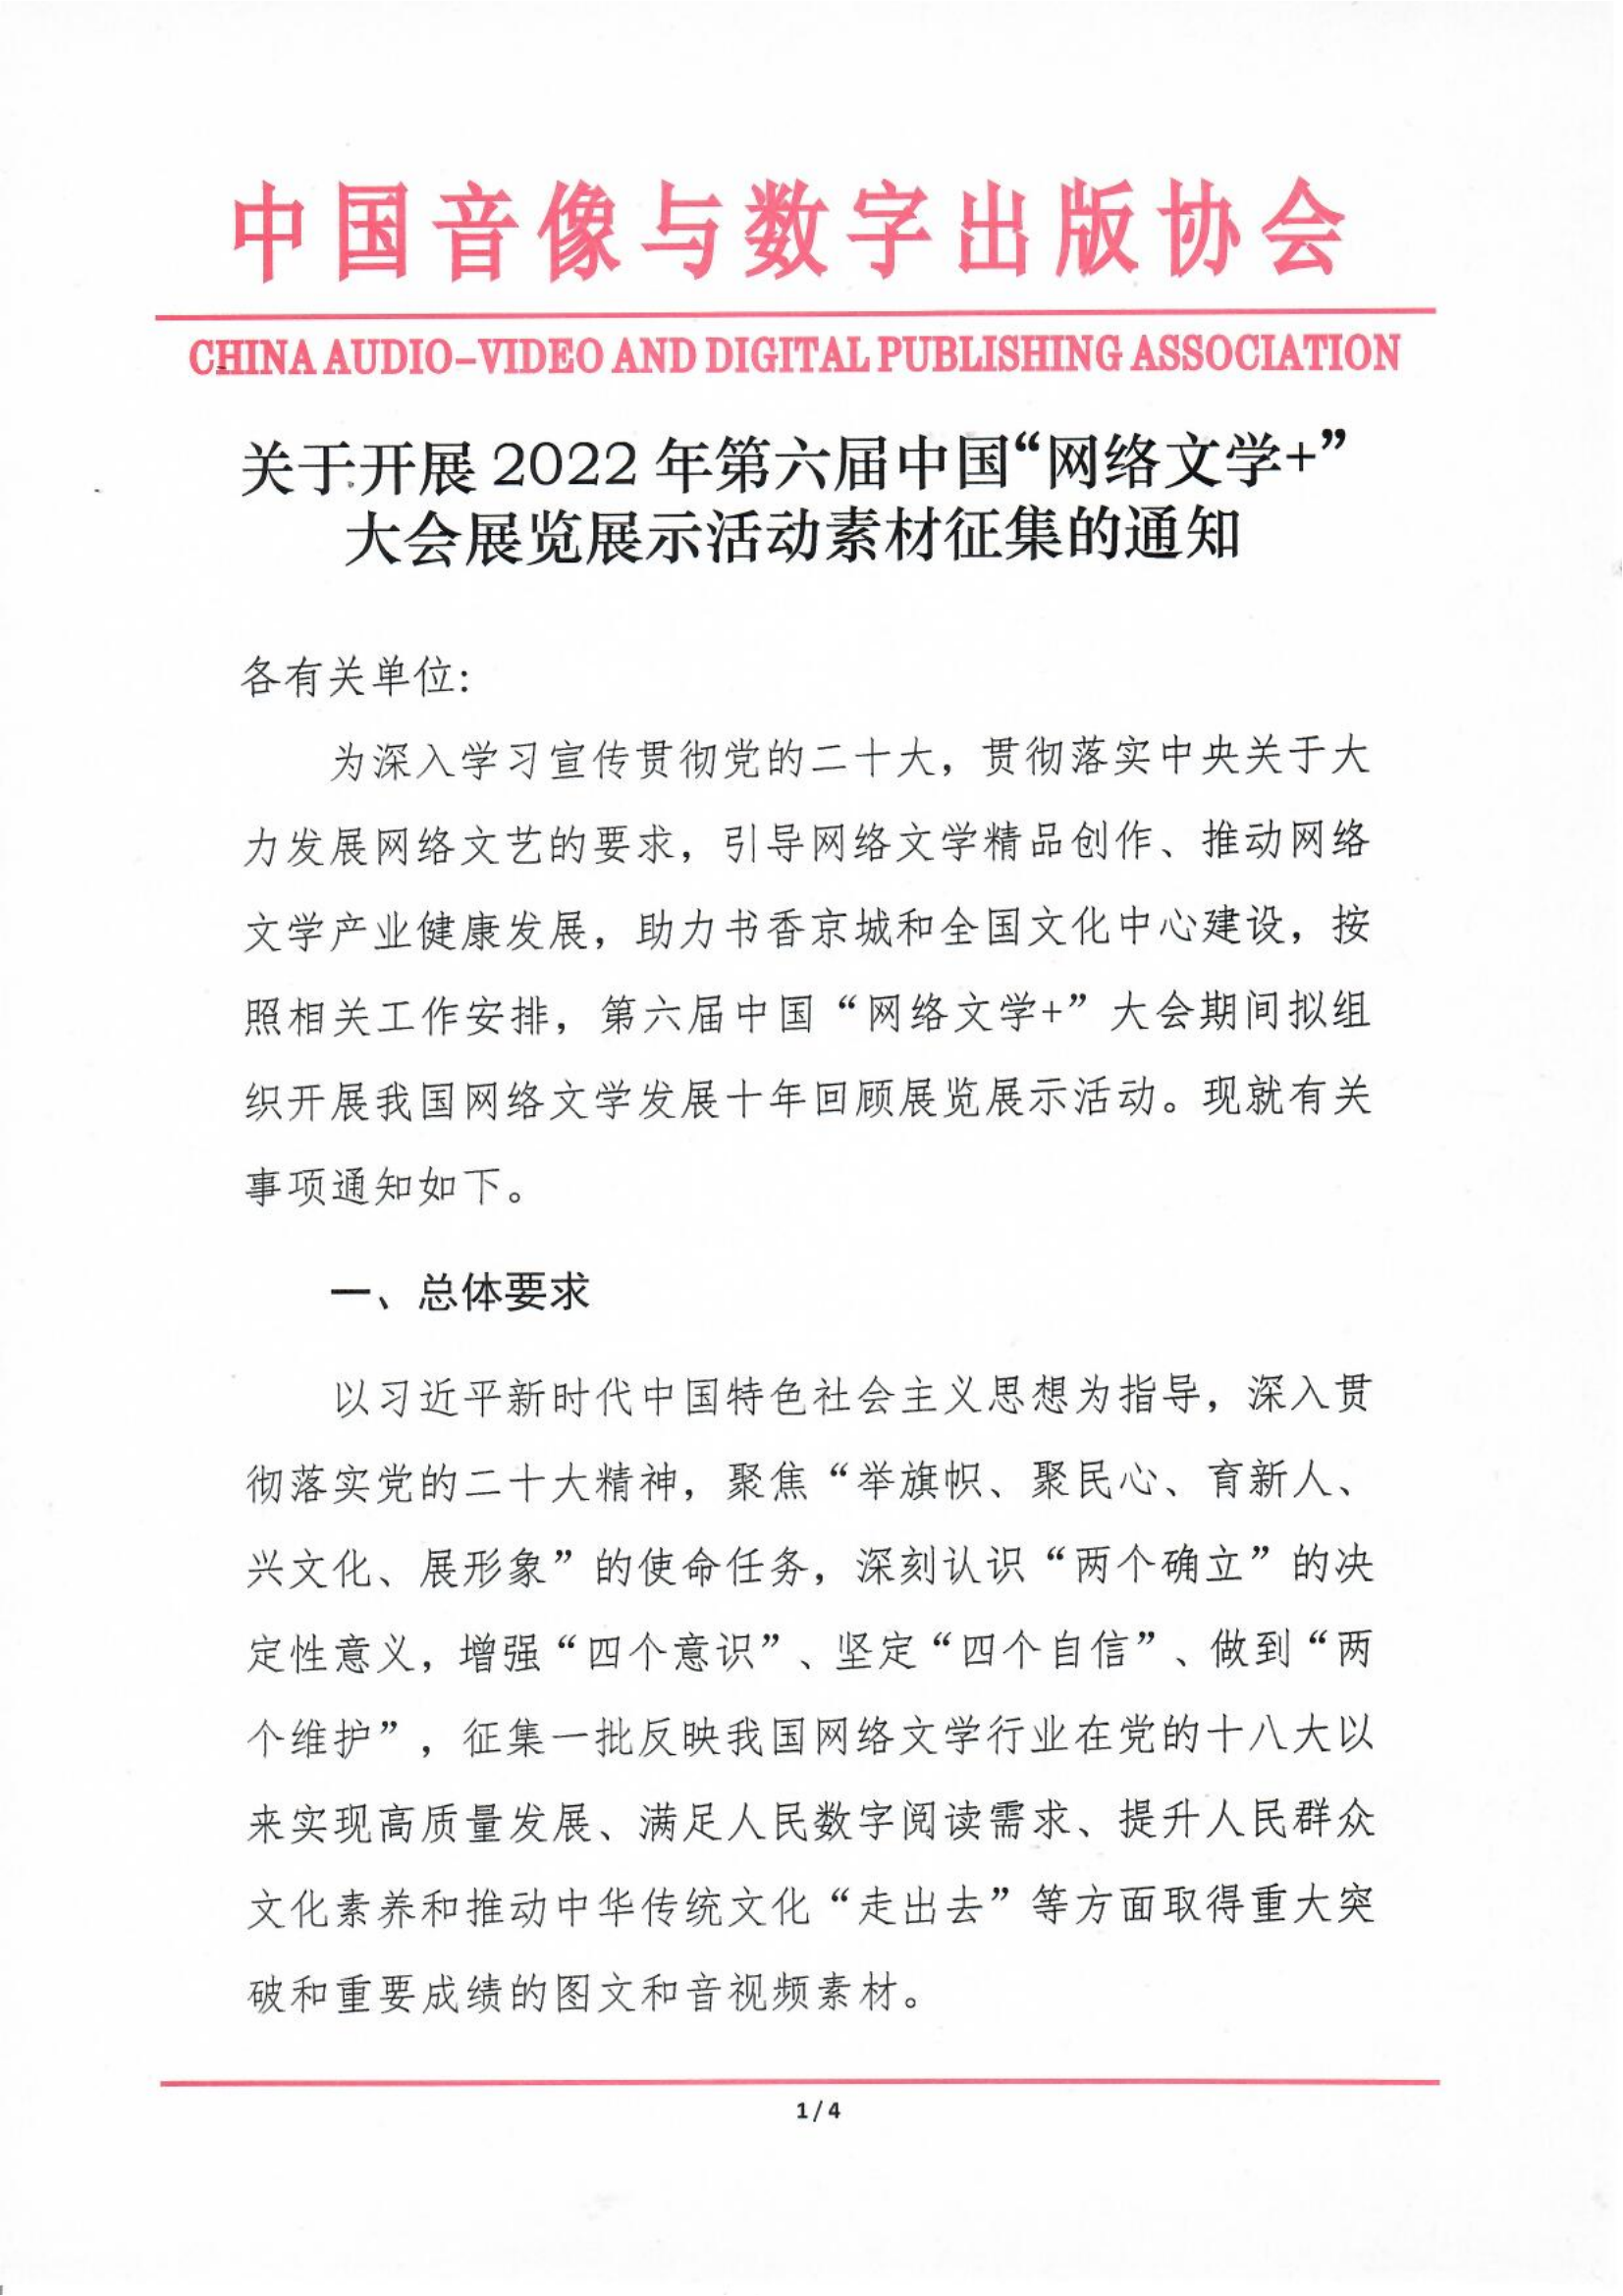 關于開展2022年第六屆中國“網絡文學+”大會展覽展示活動素材征集的通知_00.png